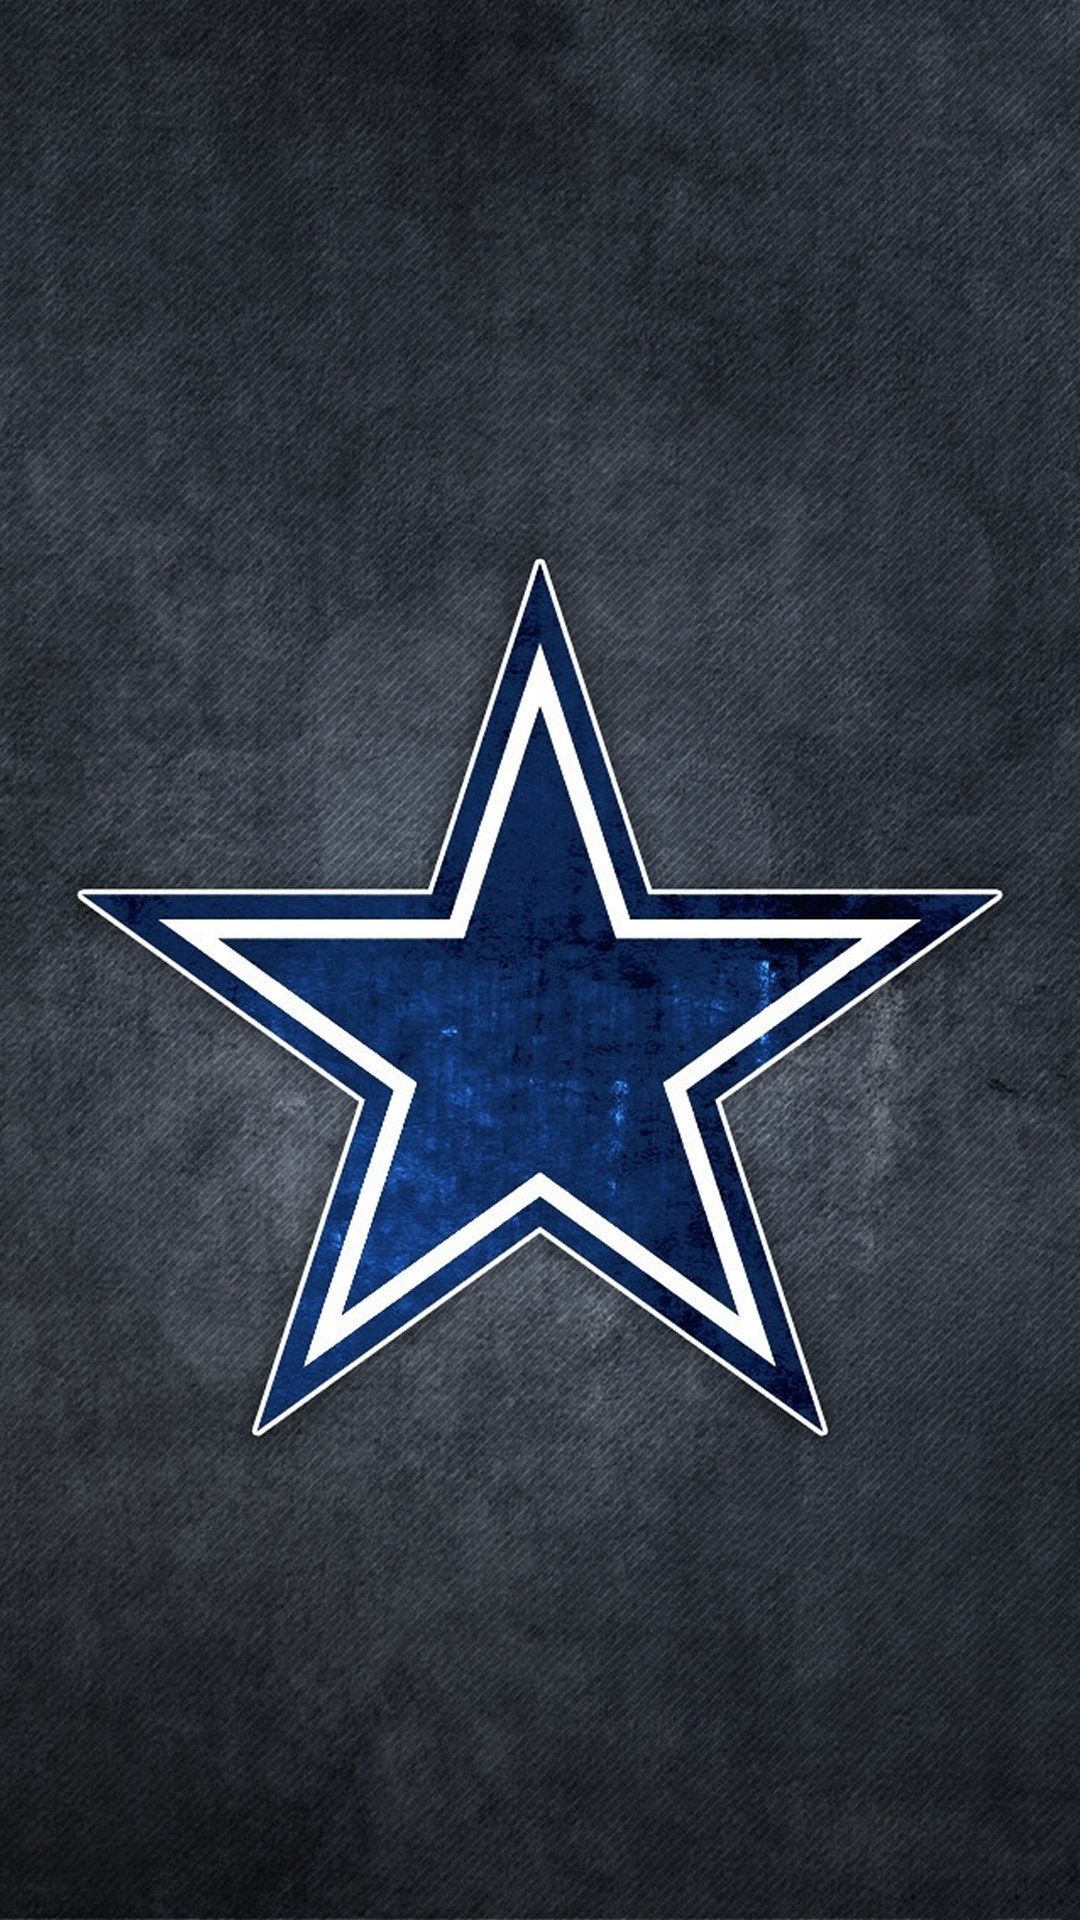 Dallas Cowboys Wallpaper Image Hupages Download iPhone Wallpaper en 2020. Fond d'écran téléphone, Cow boy